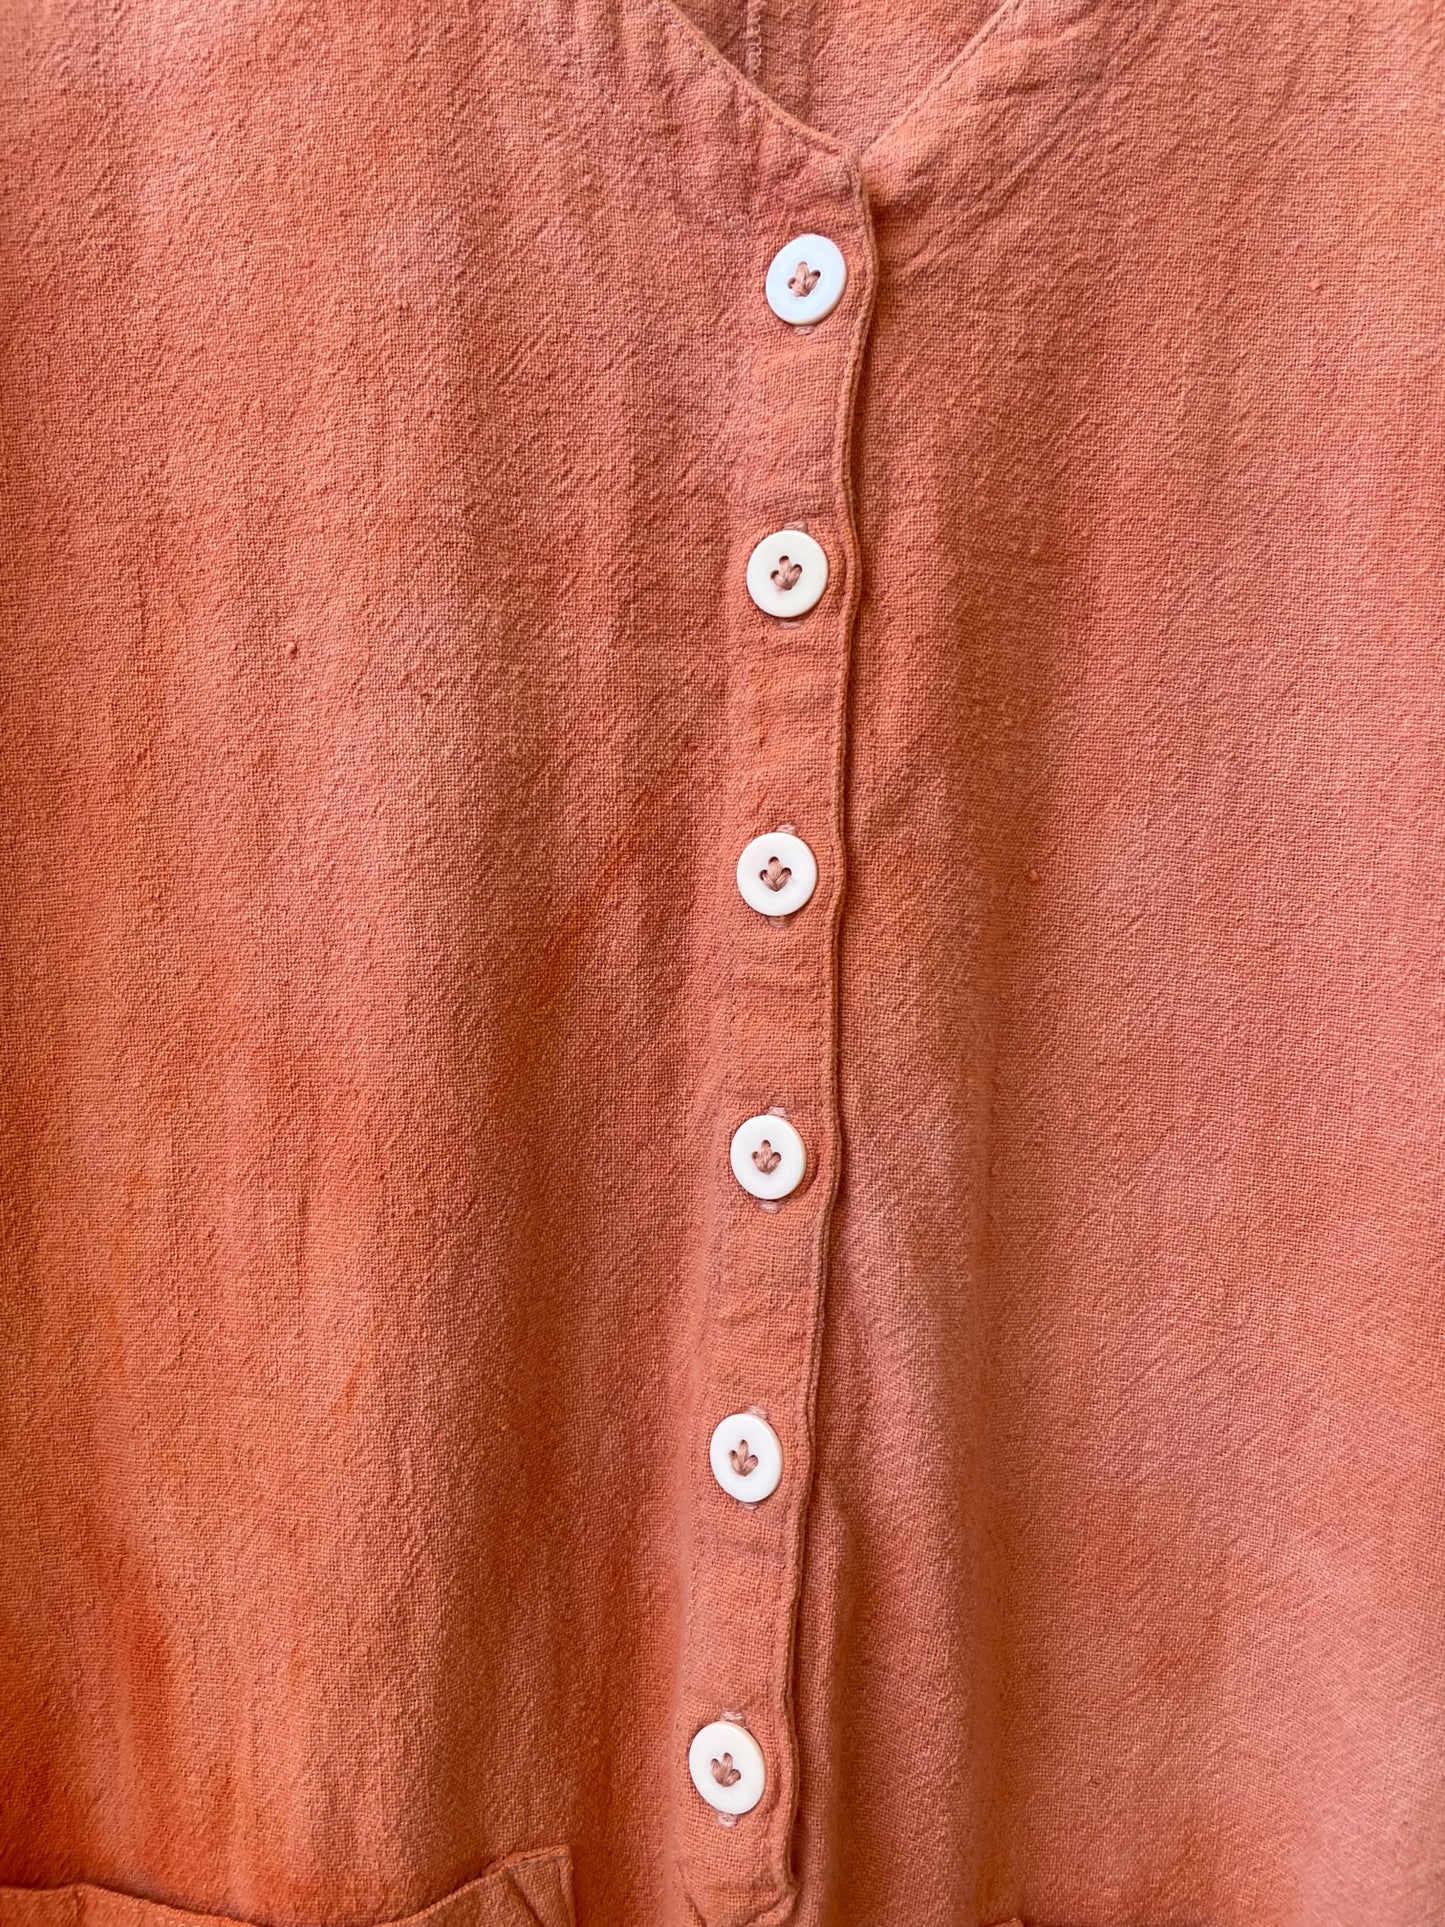 #59 Tie-dye Peach Jumpsuit M/L